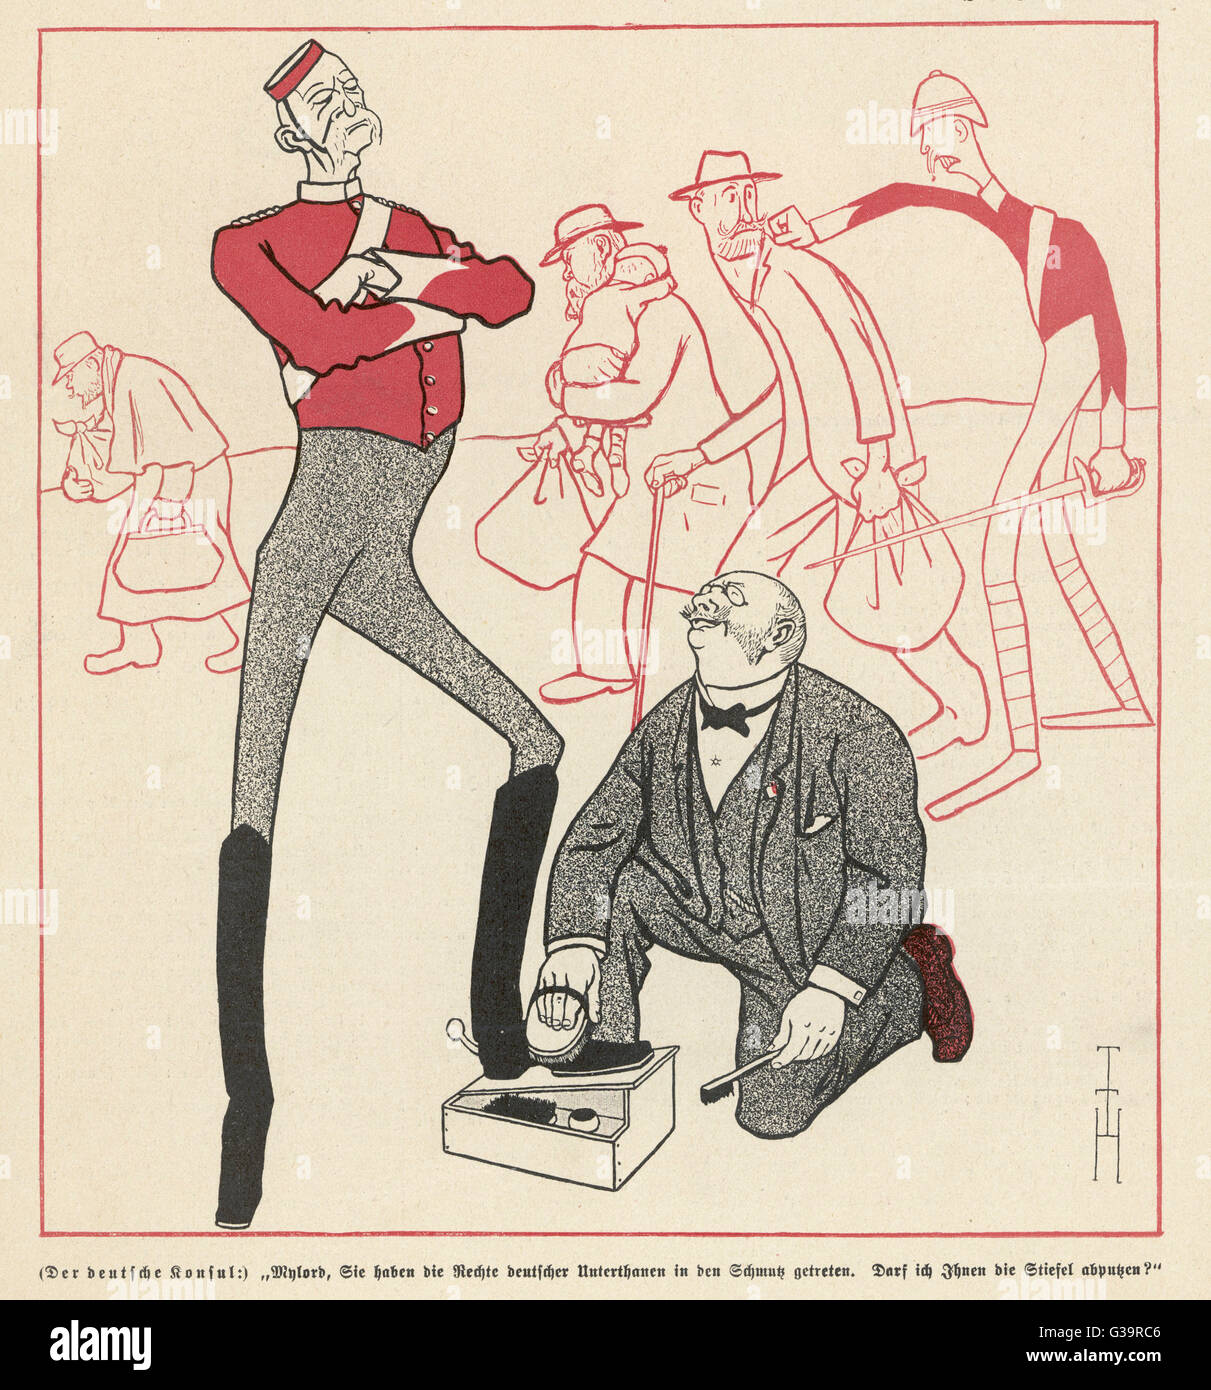 Dibujos animados cónsul alemán: "mi Señor, has andado los derechos de sujetos alemán en la suciedad. ¿Puedo limpiar tus botas?" Fecha: 1900 Foto de stock